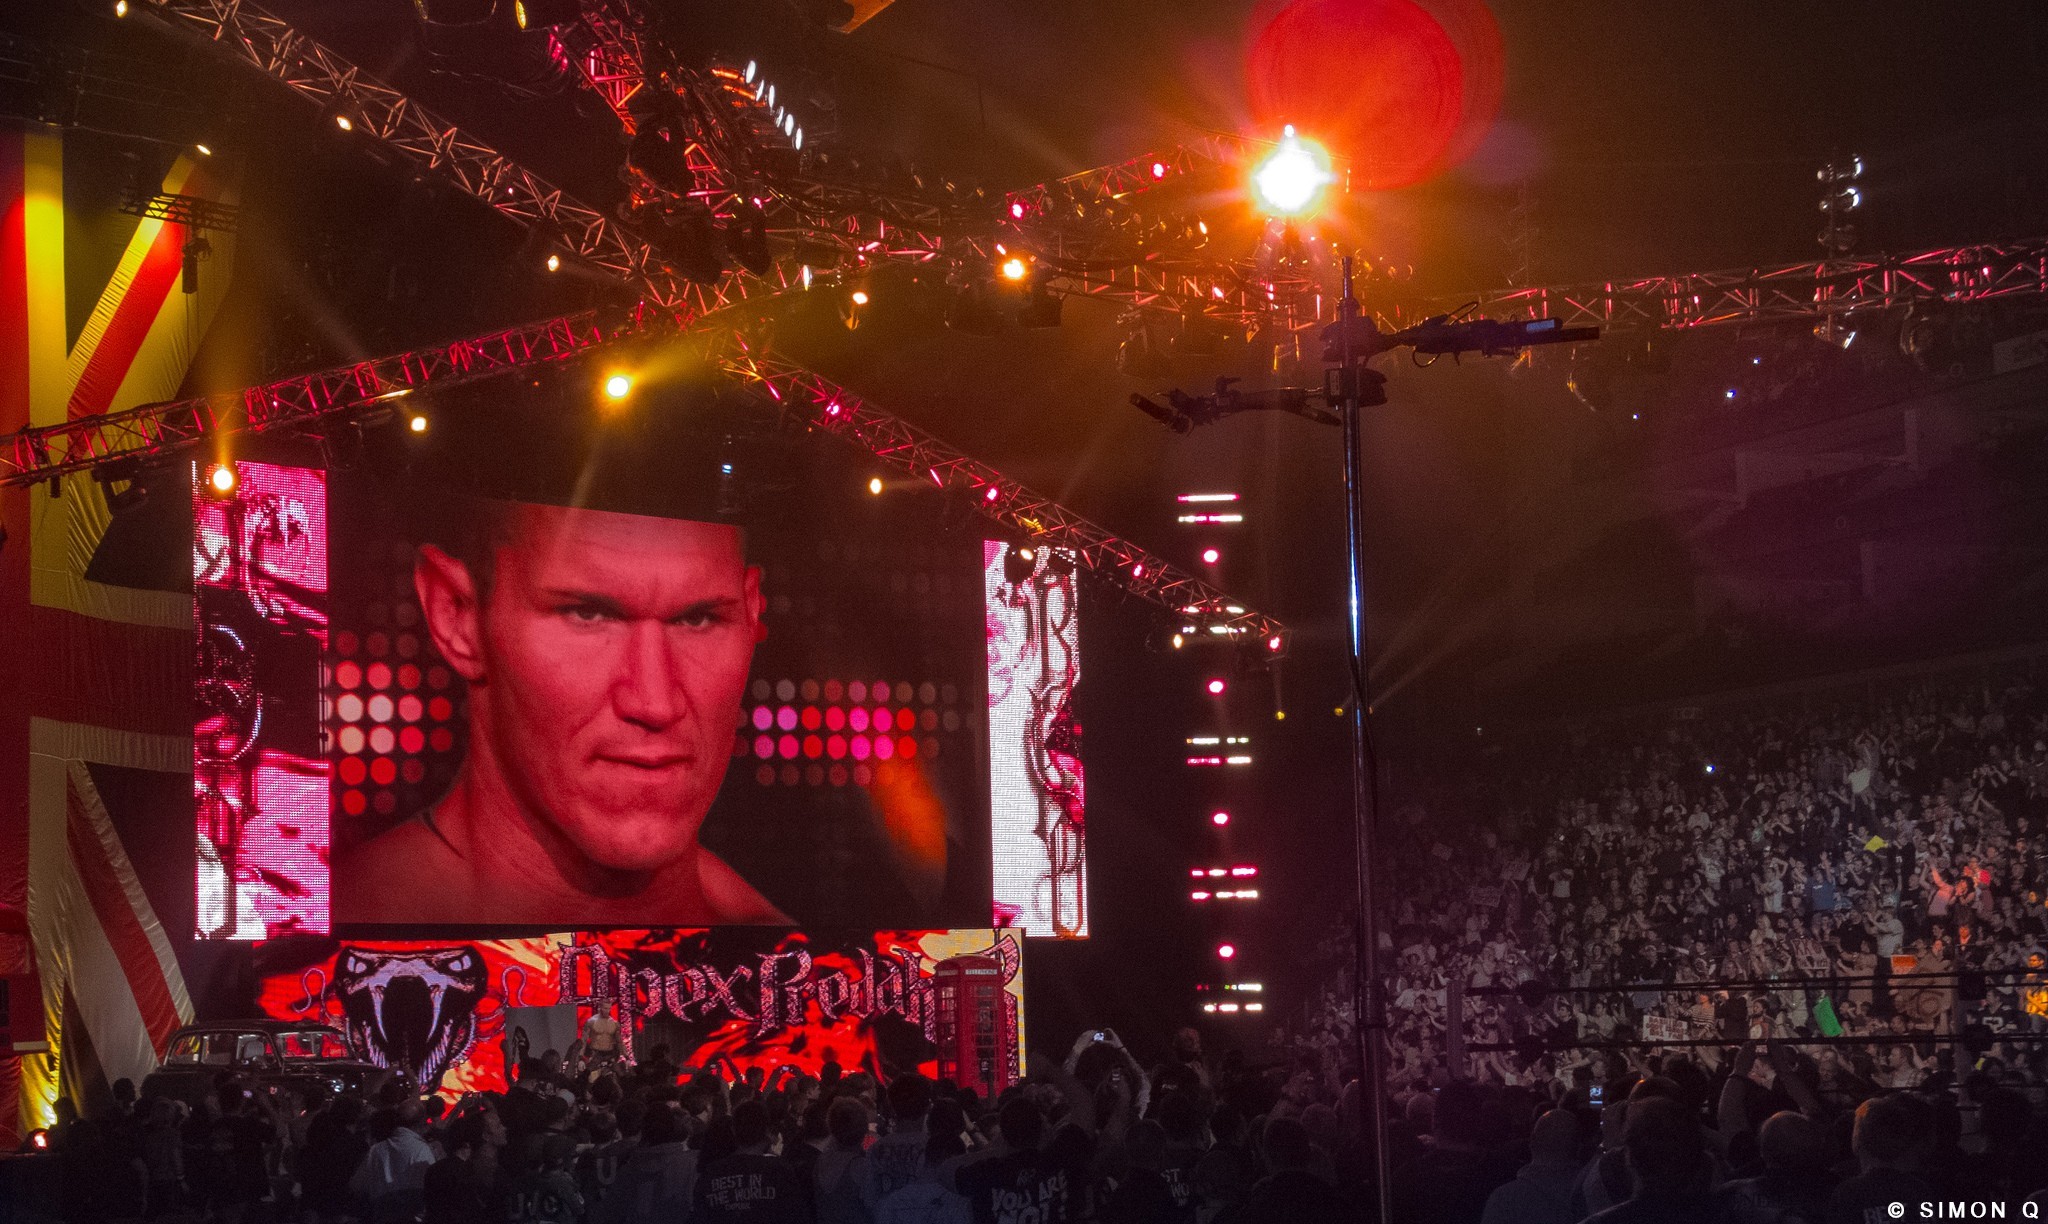 2048x1224 WWE Superstar Randy Orton In The Big Screen